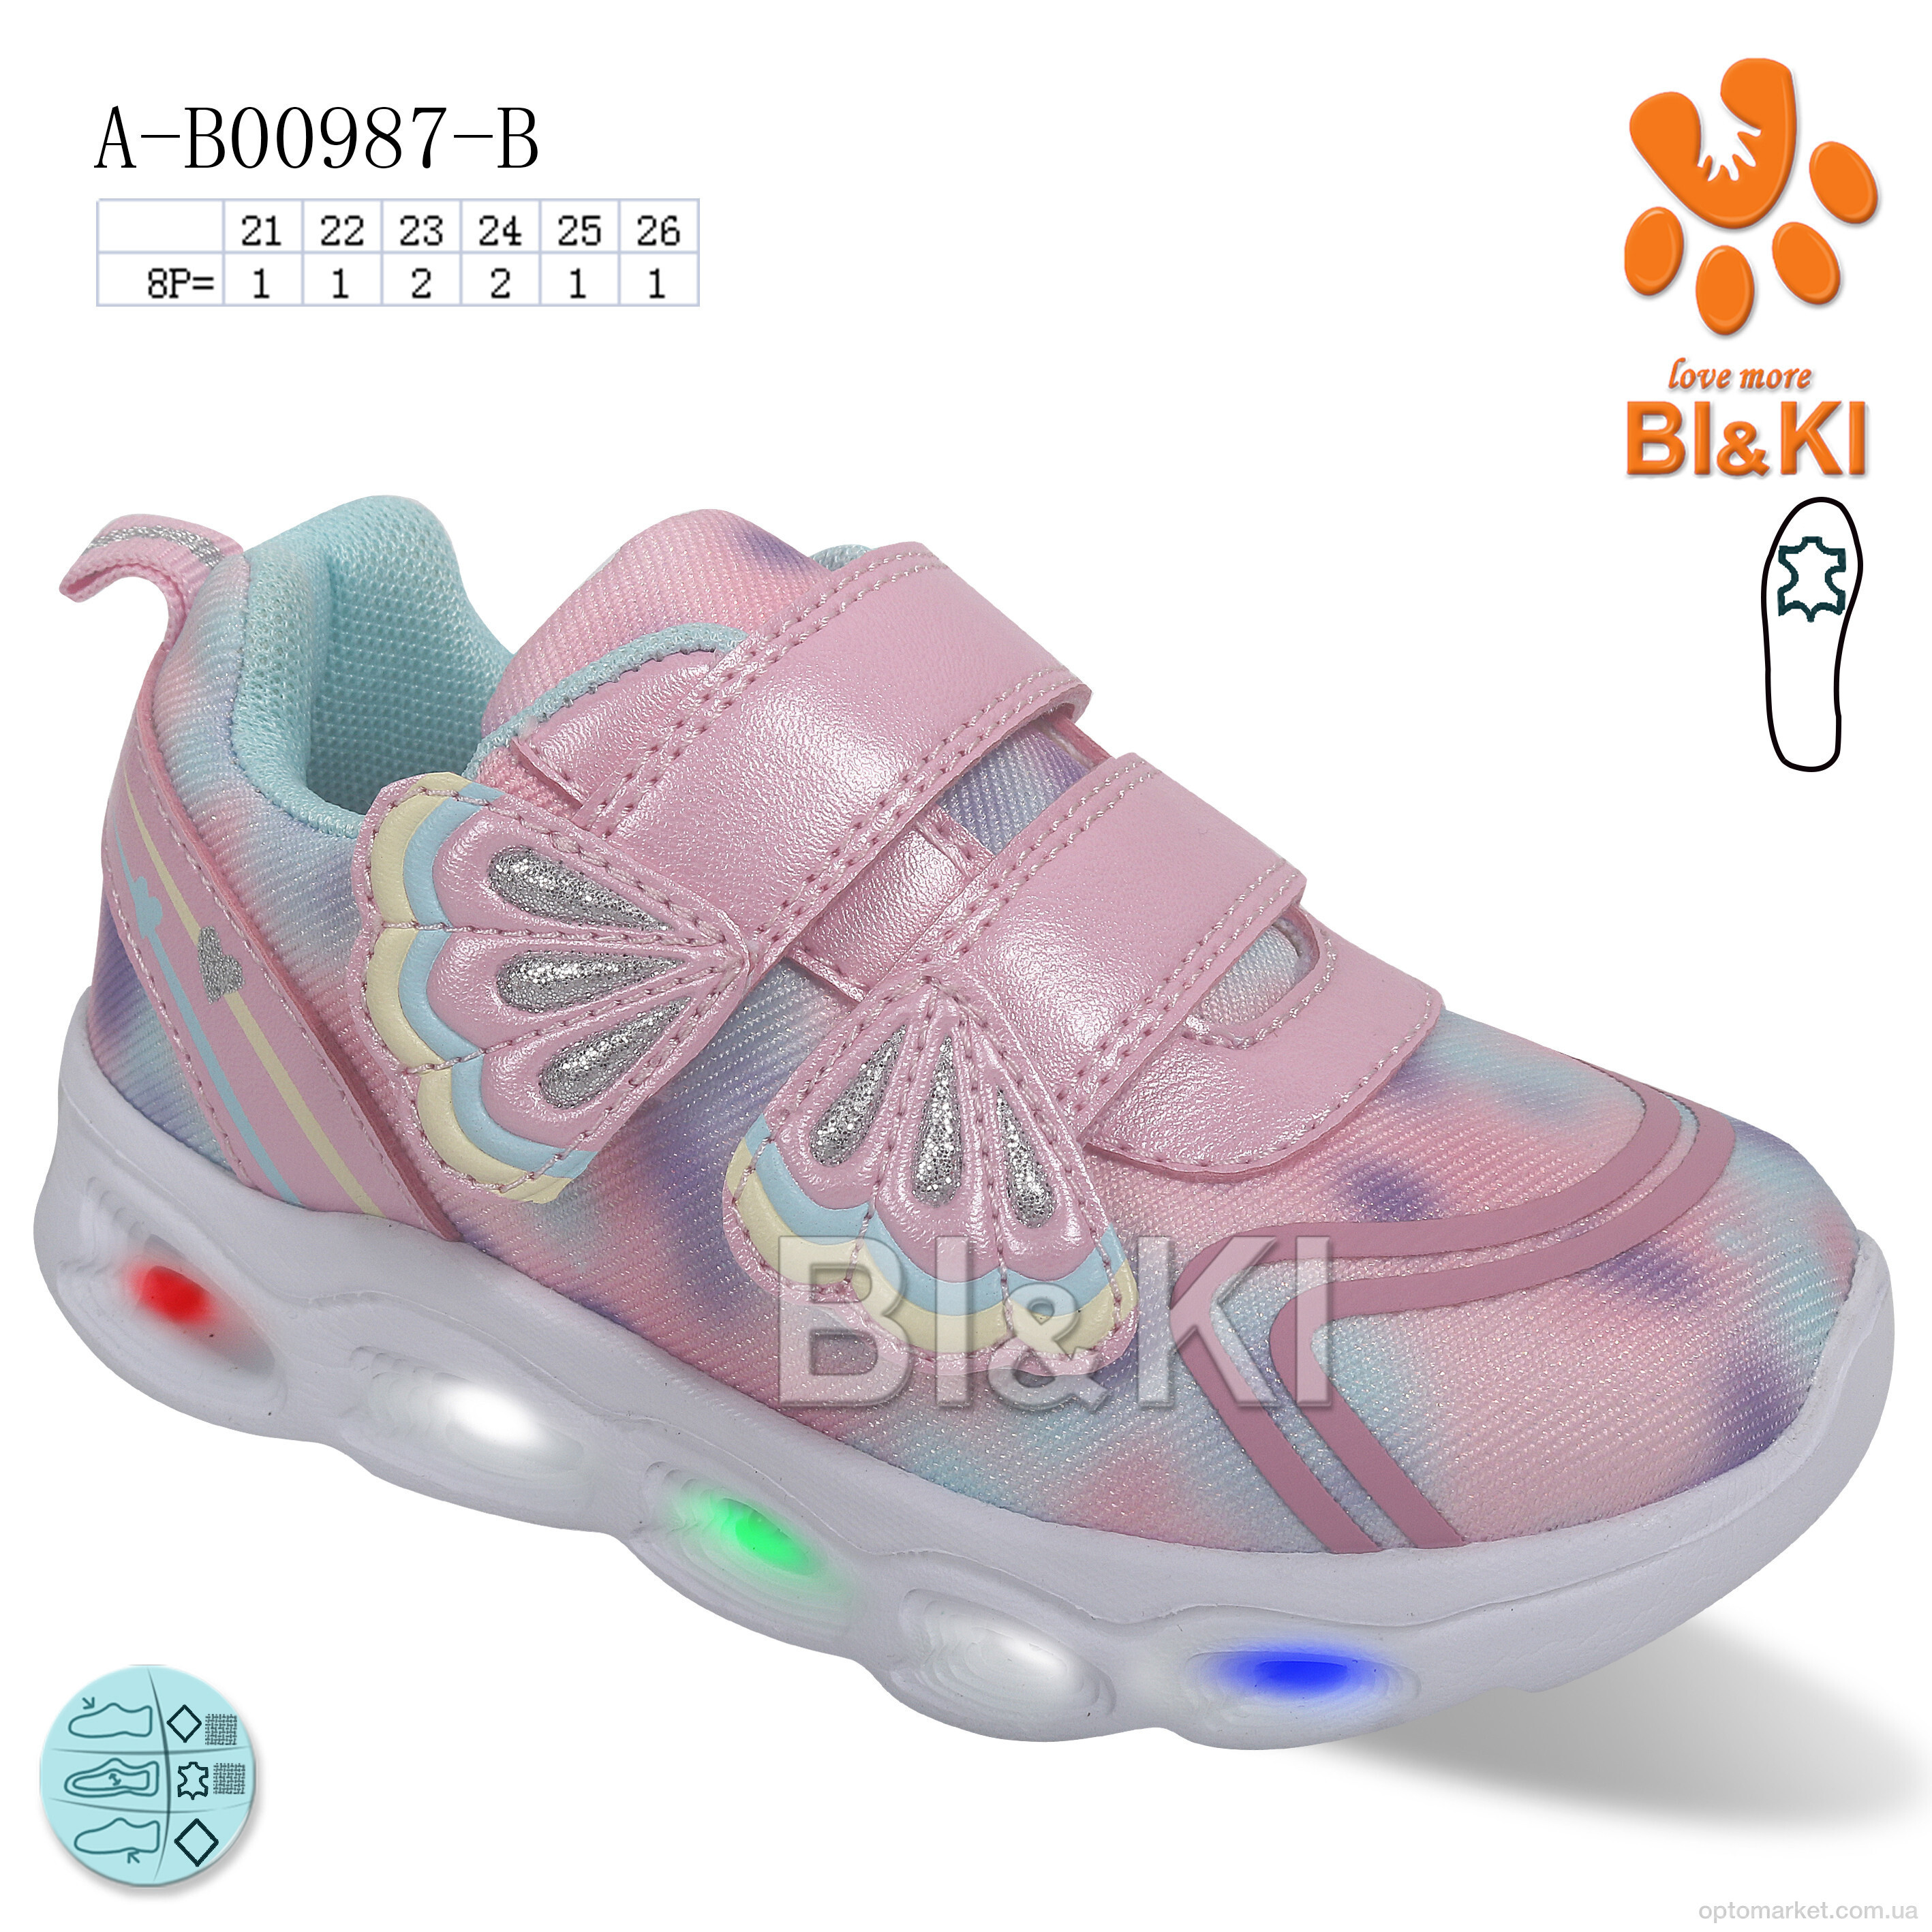 Купить Кросівки дитячі A-B00987-B LED Bi&Ki рожевий, фото 1